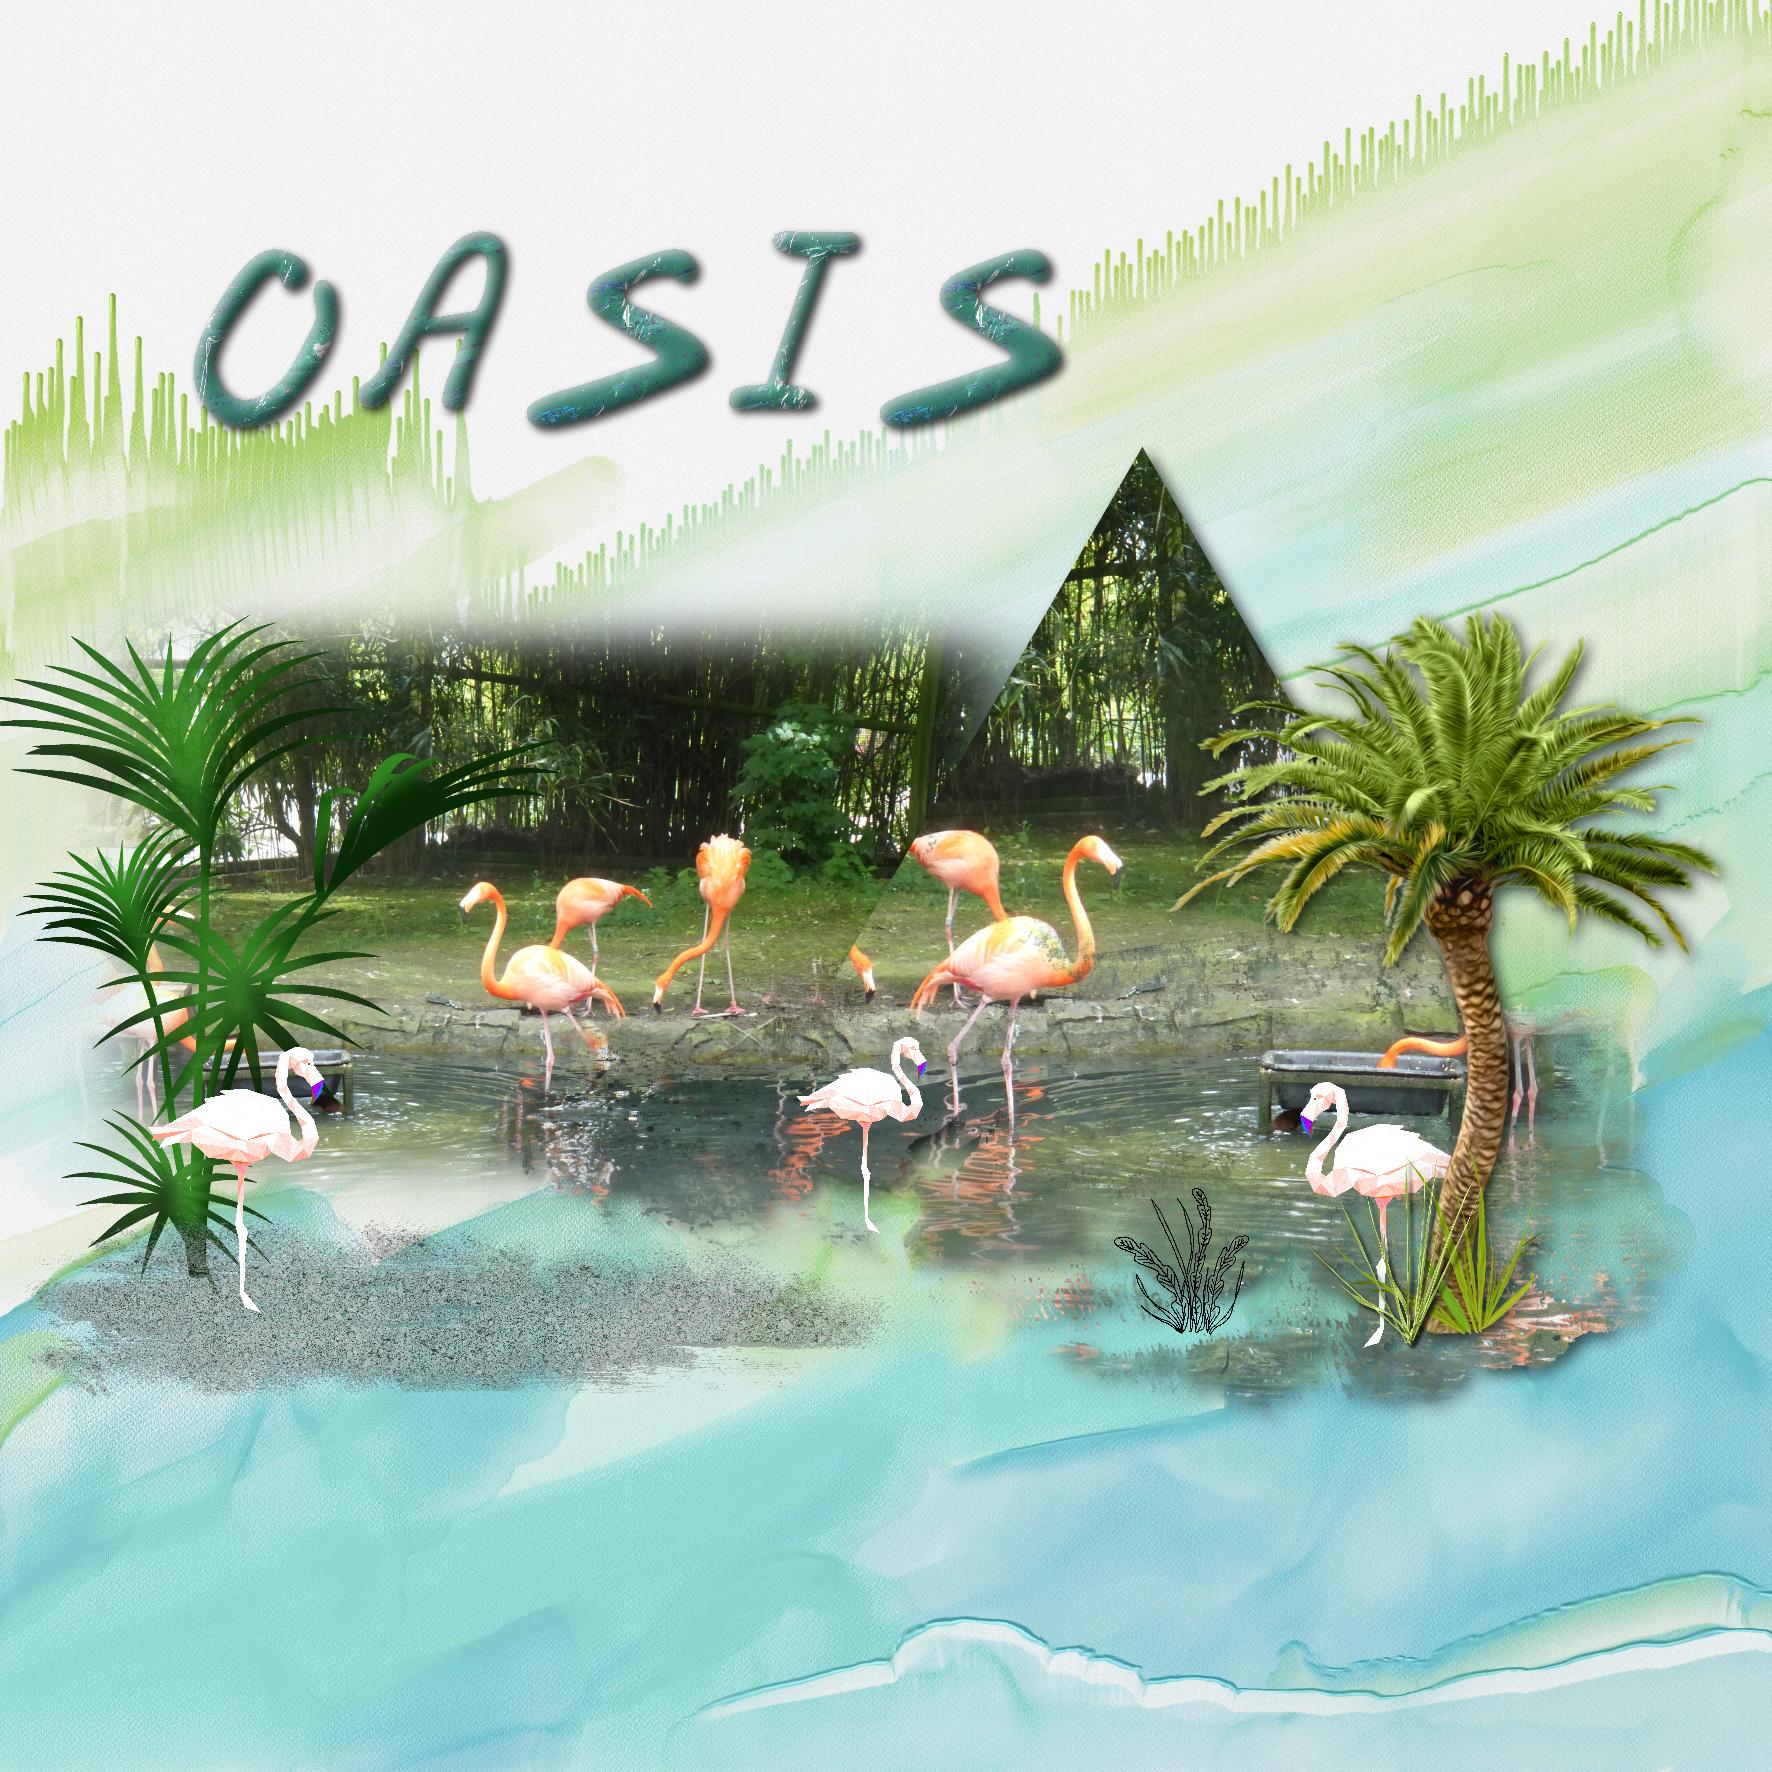 oasis.jpg